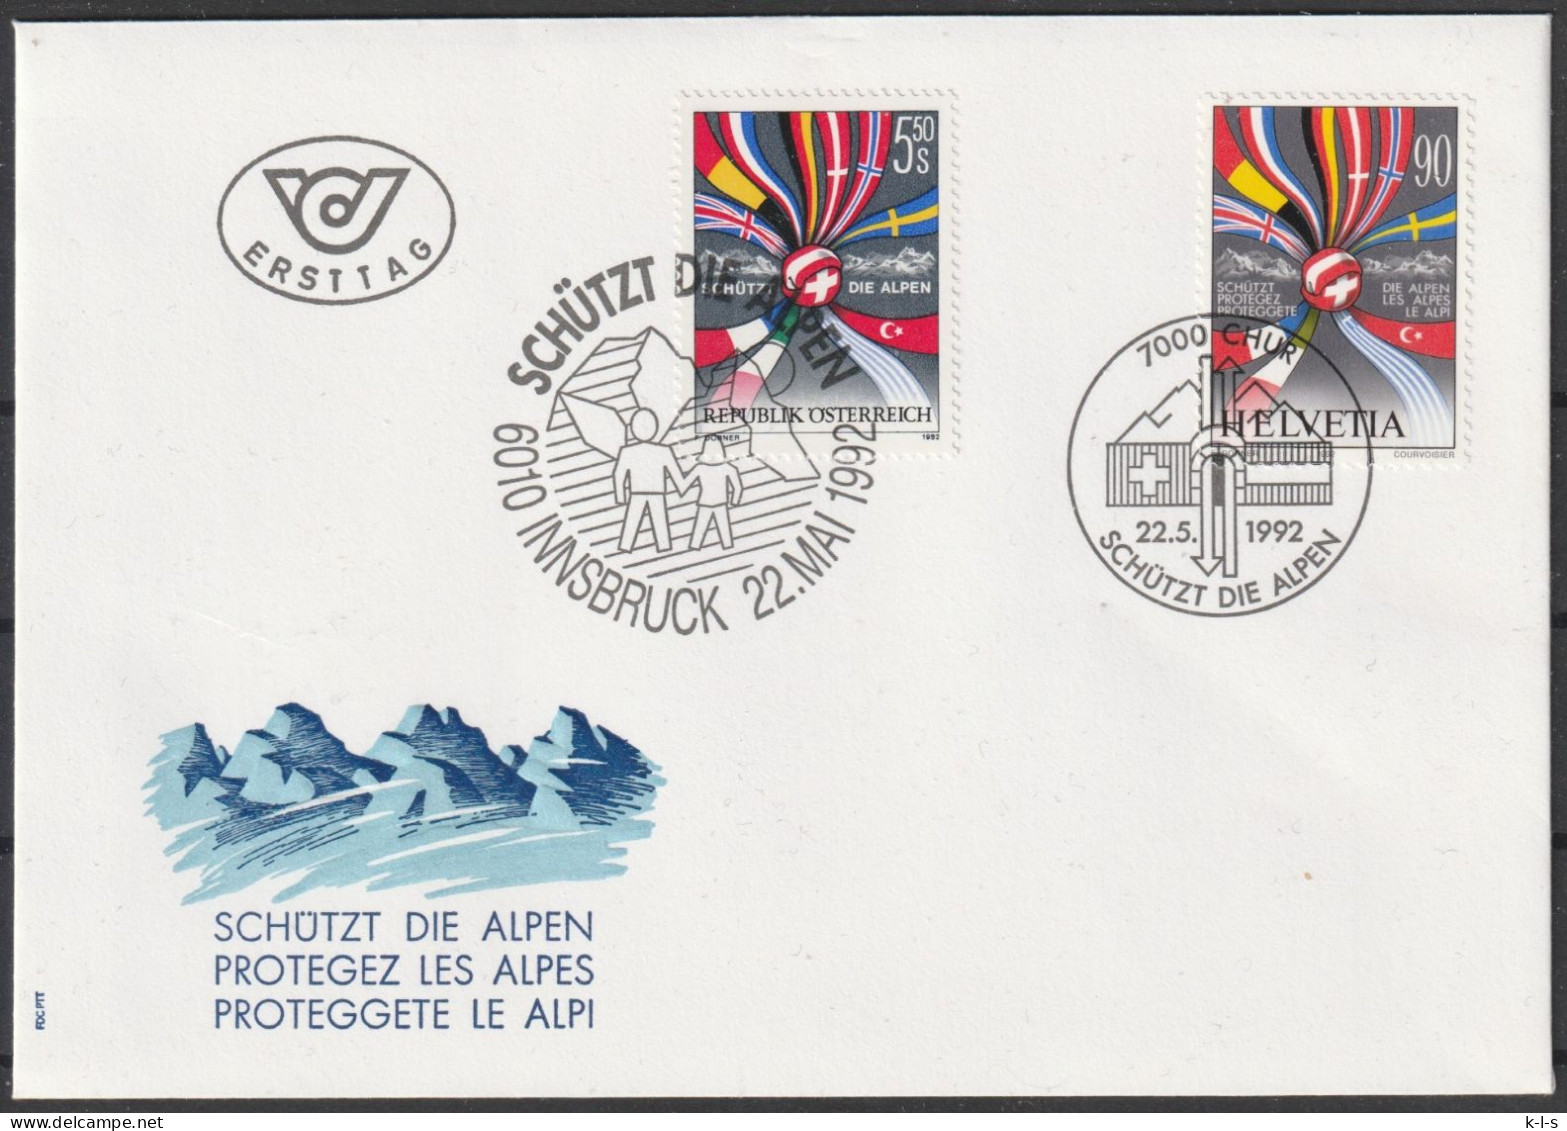 Schweiz: 1992, FDC Blankobrief, Mi. Nr. 1477, Schütz Die Alpen, Mit Parallelausgabe Österreich Mi. Nr. 2065. - FDC